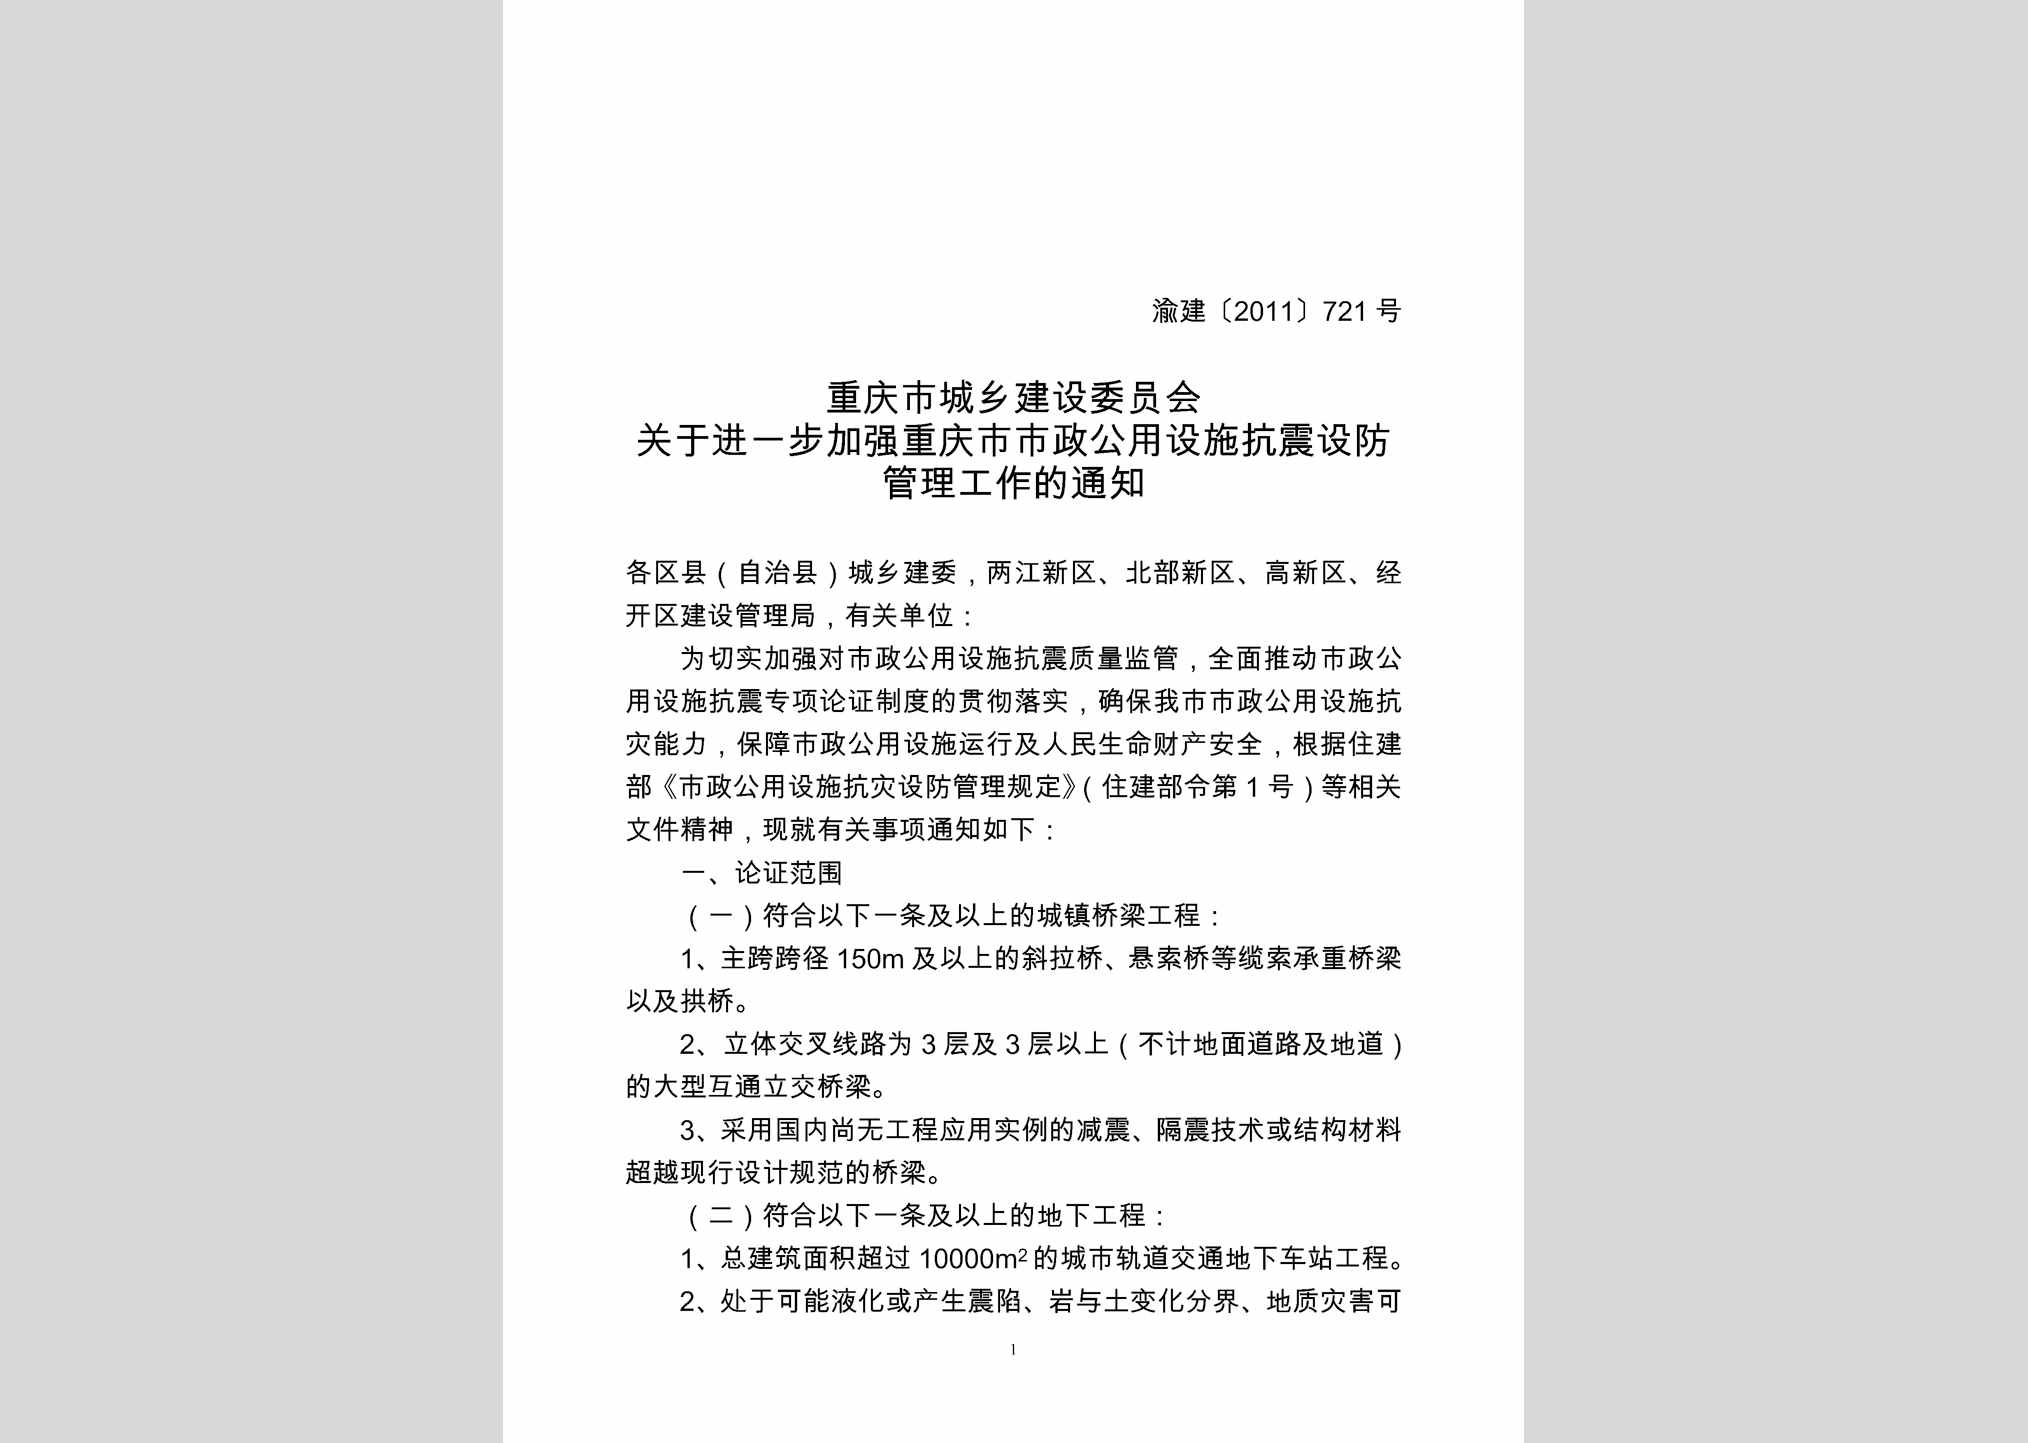 渝建[2011]721号：关于进一步加强重庆市市政公用设施抗震设防管理工作的通知